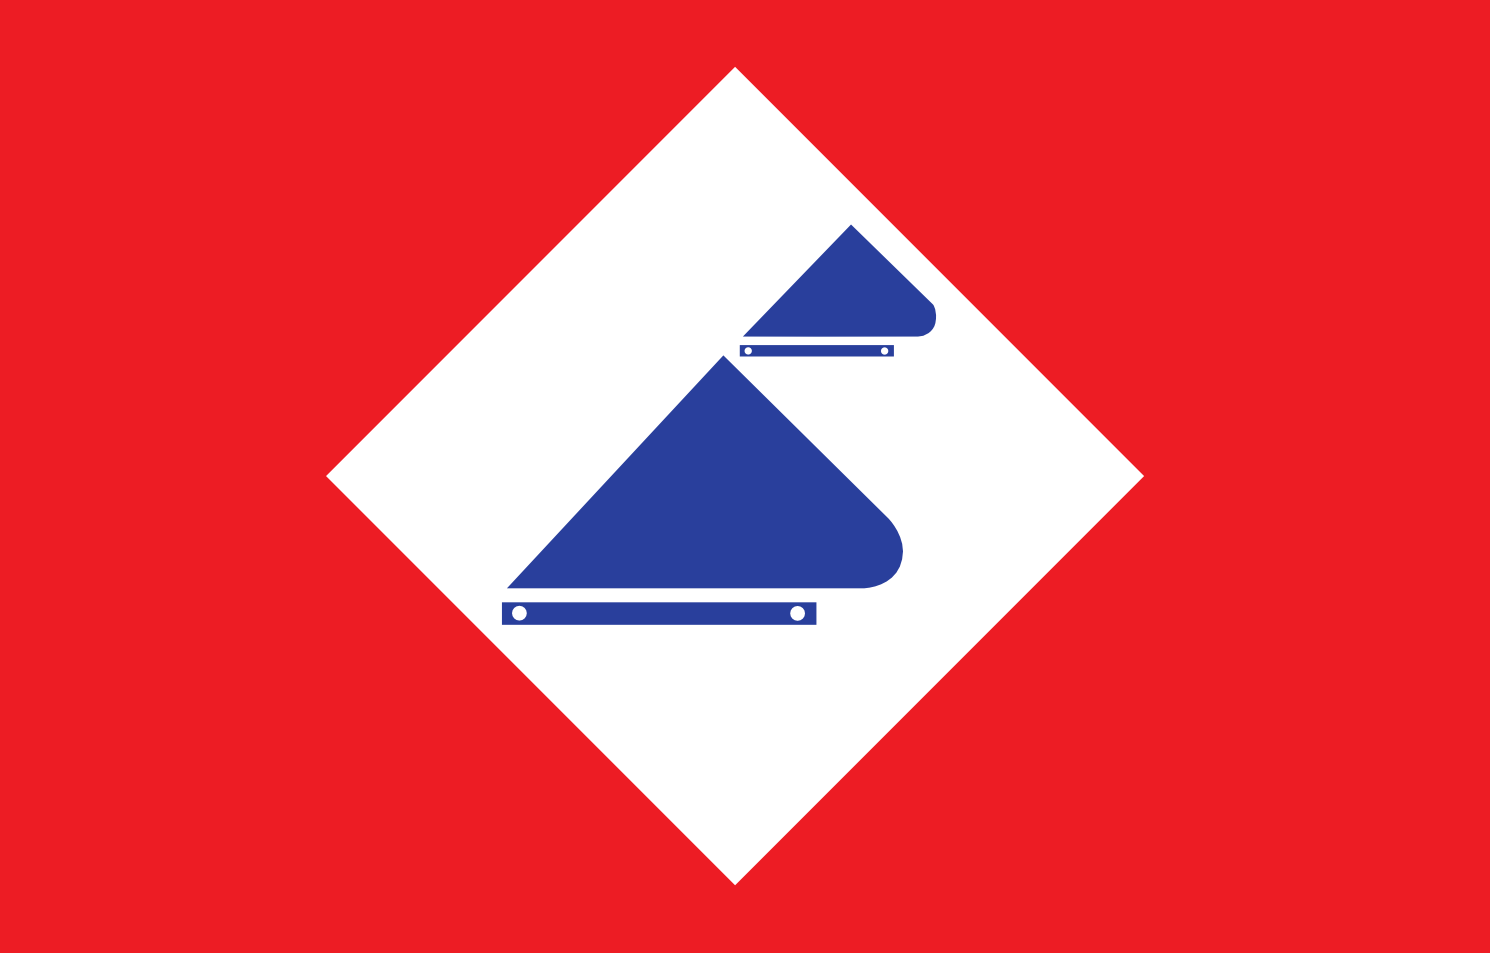 logo_dutchdredging.png (23.1 K)